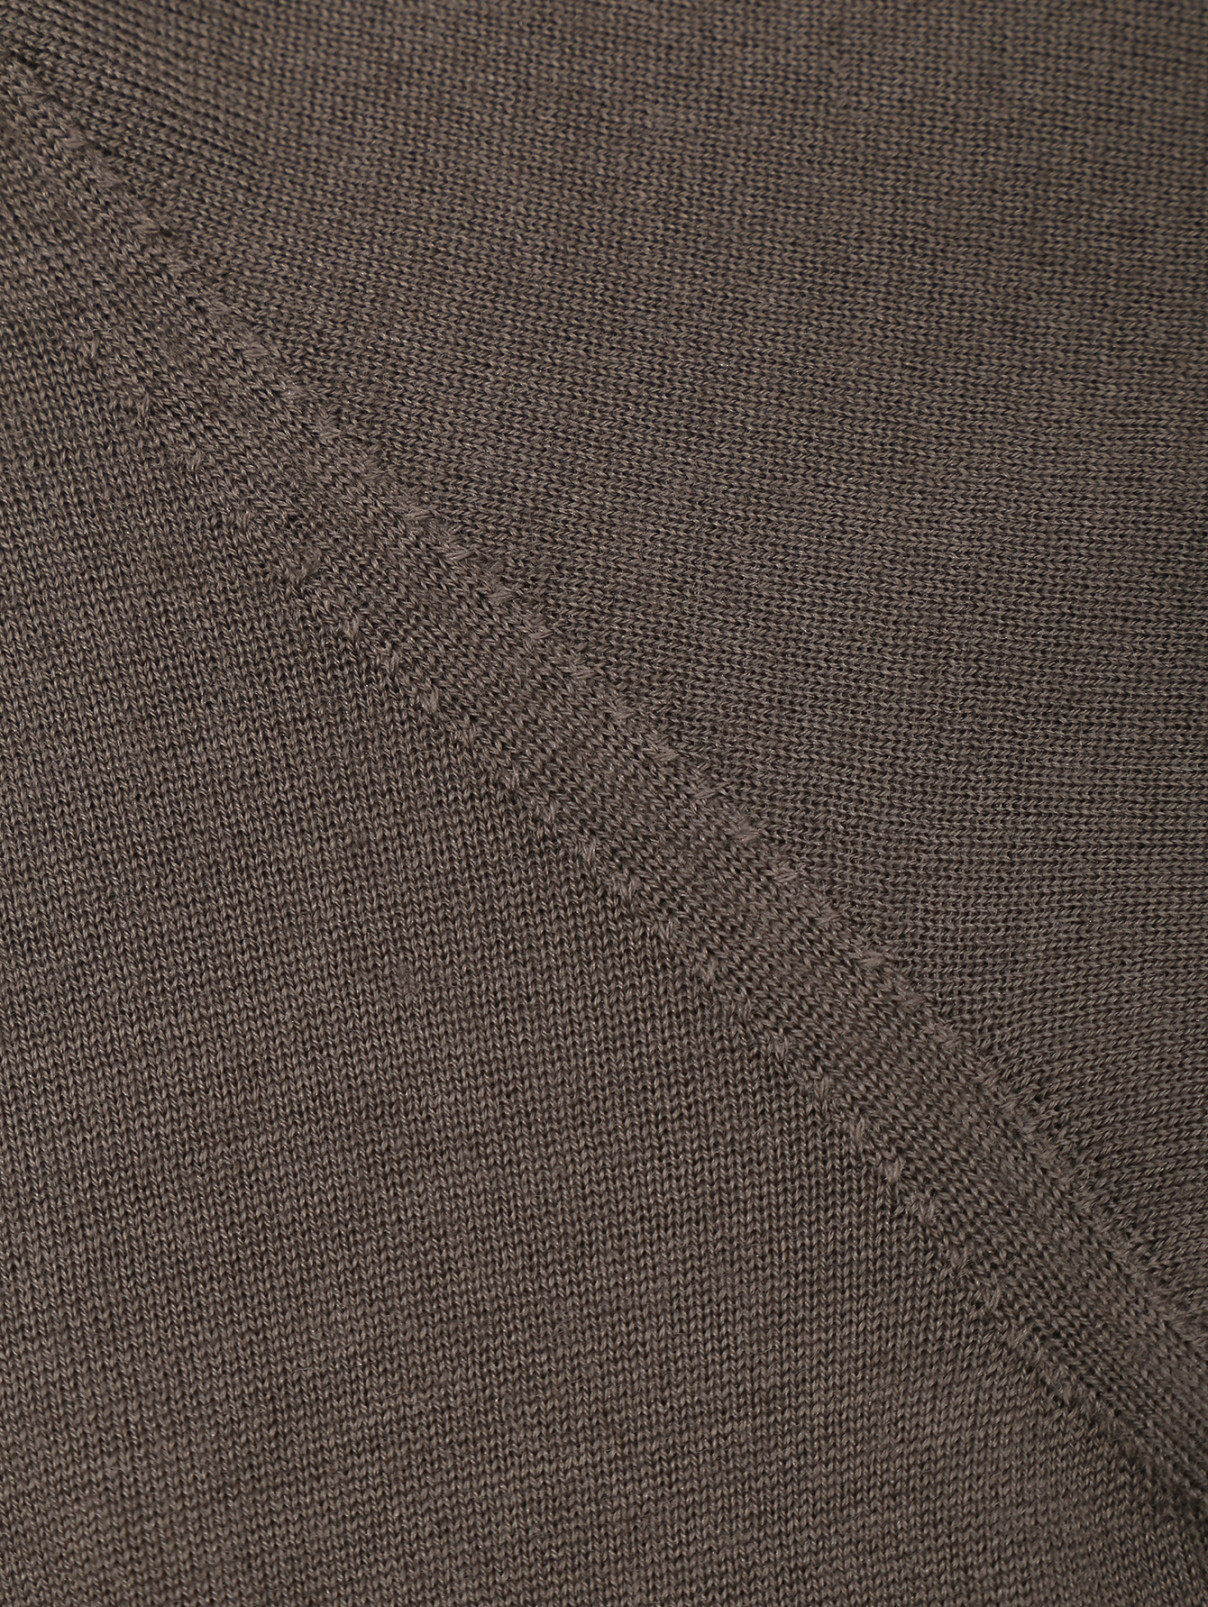 Джемпер из шерсти, шелка и кашемира мелкой вязки LARDINI  –  Деталь1  – Цвет:  Коричневый